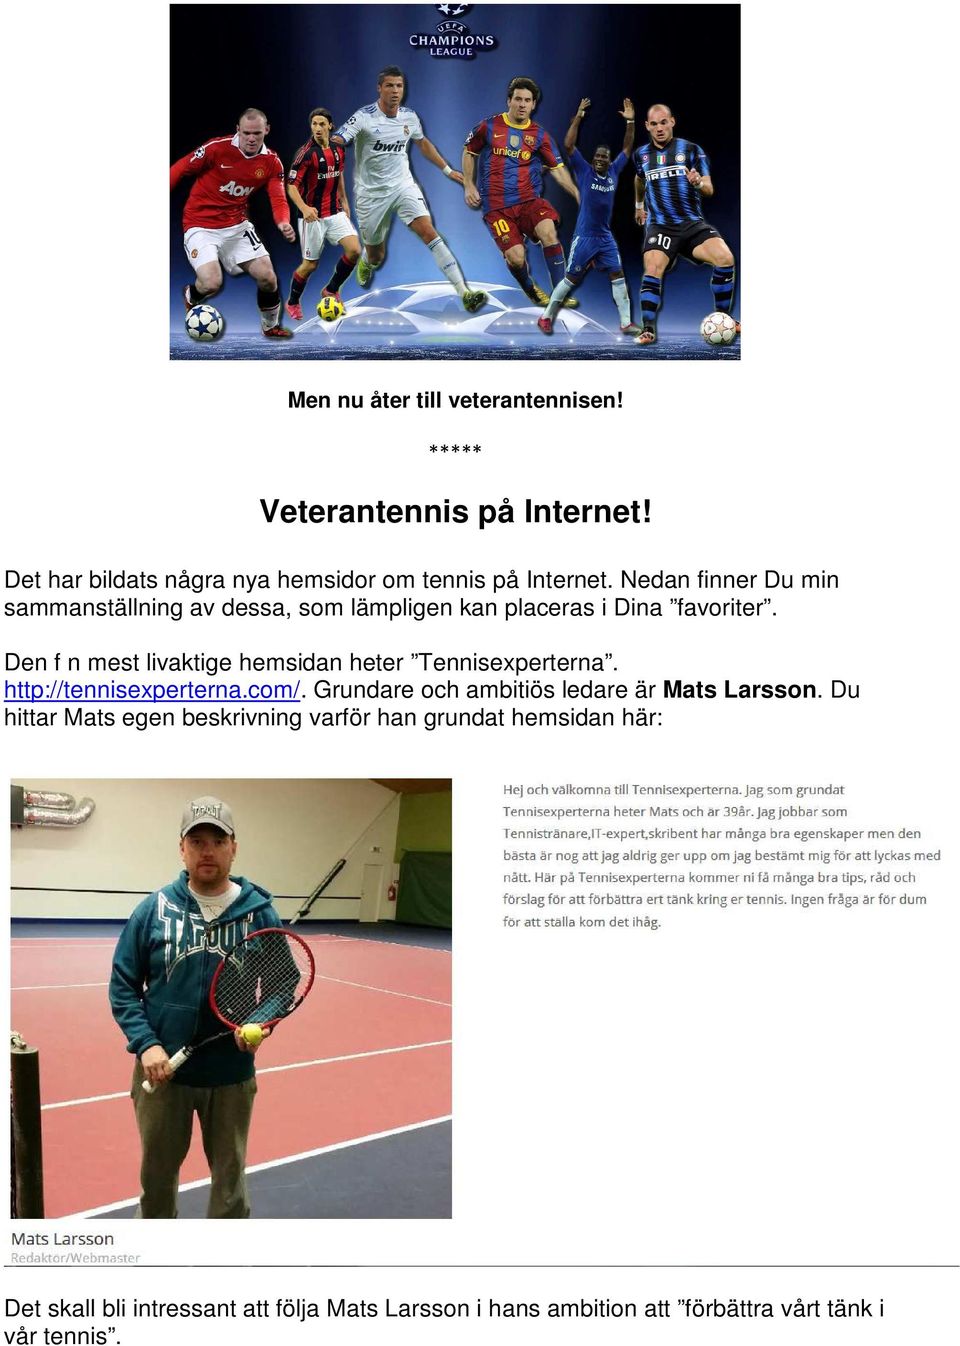 Den f n mest livaktige hemsidan heter Tennisexperterna. http://tennisexperterna.com/.